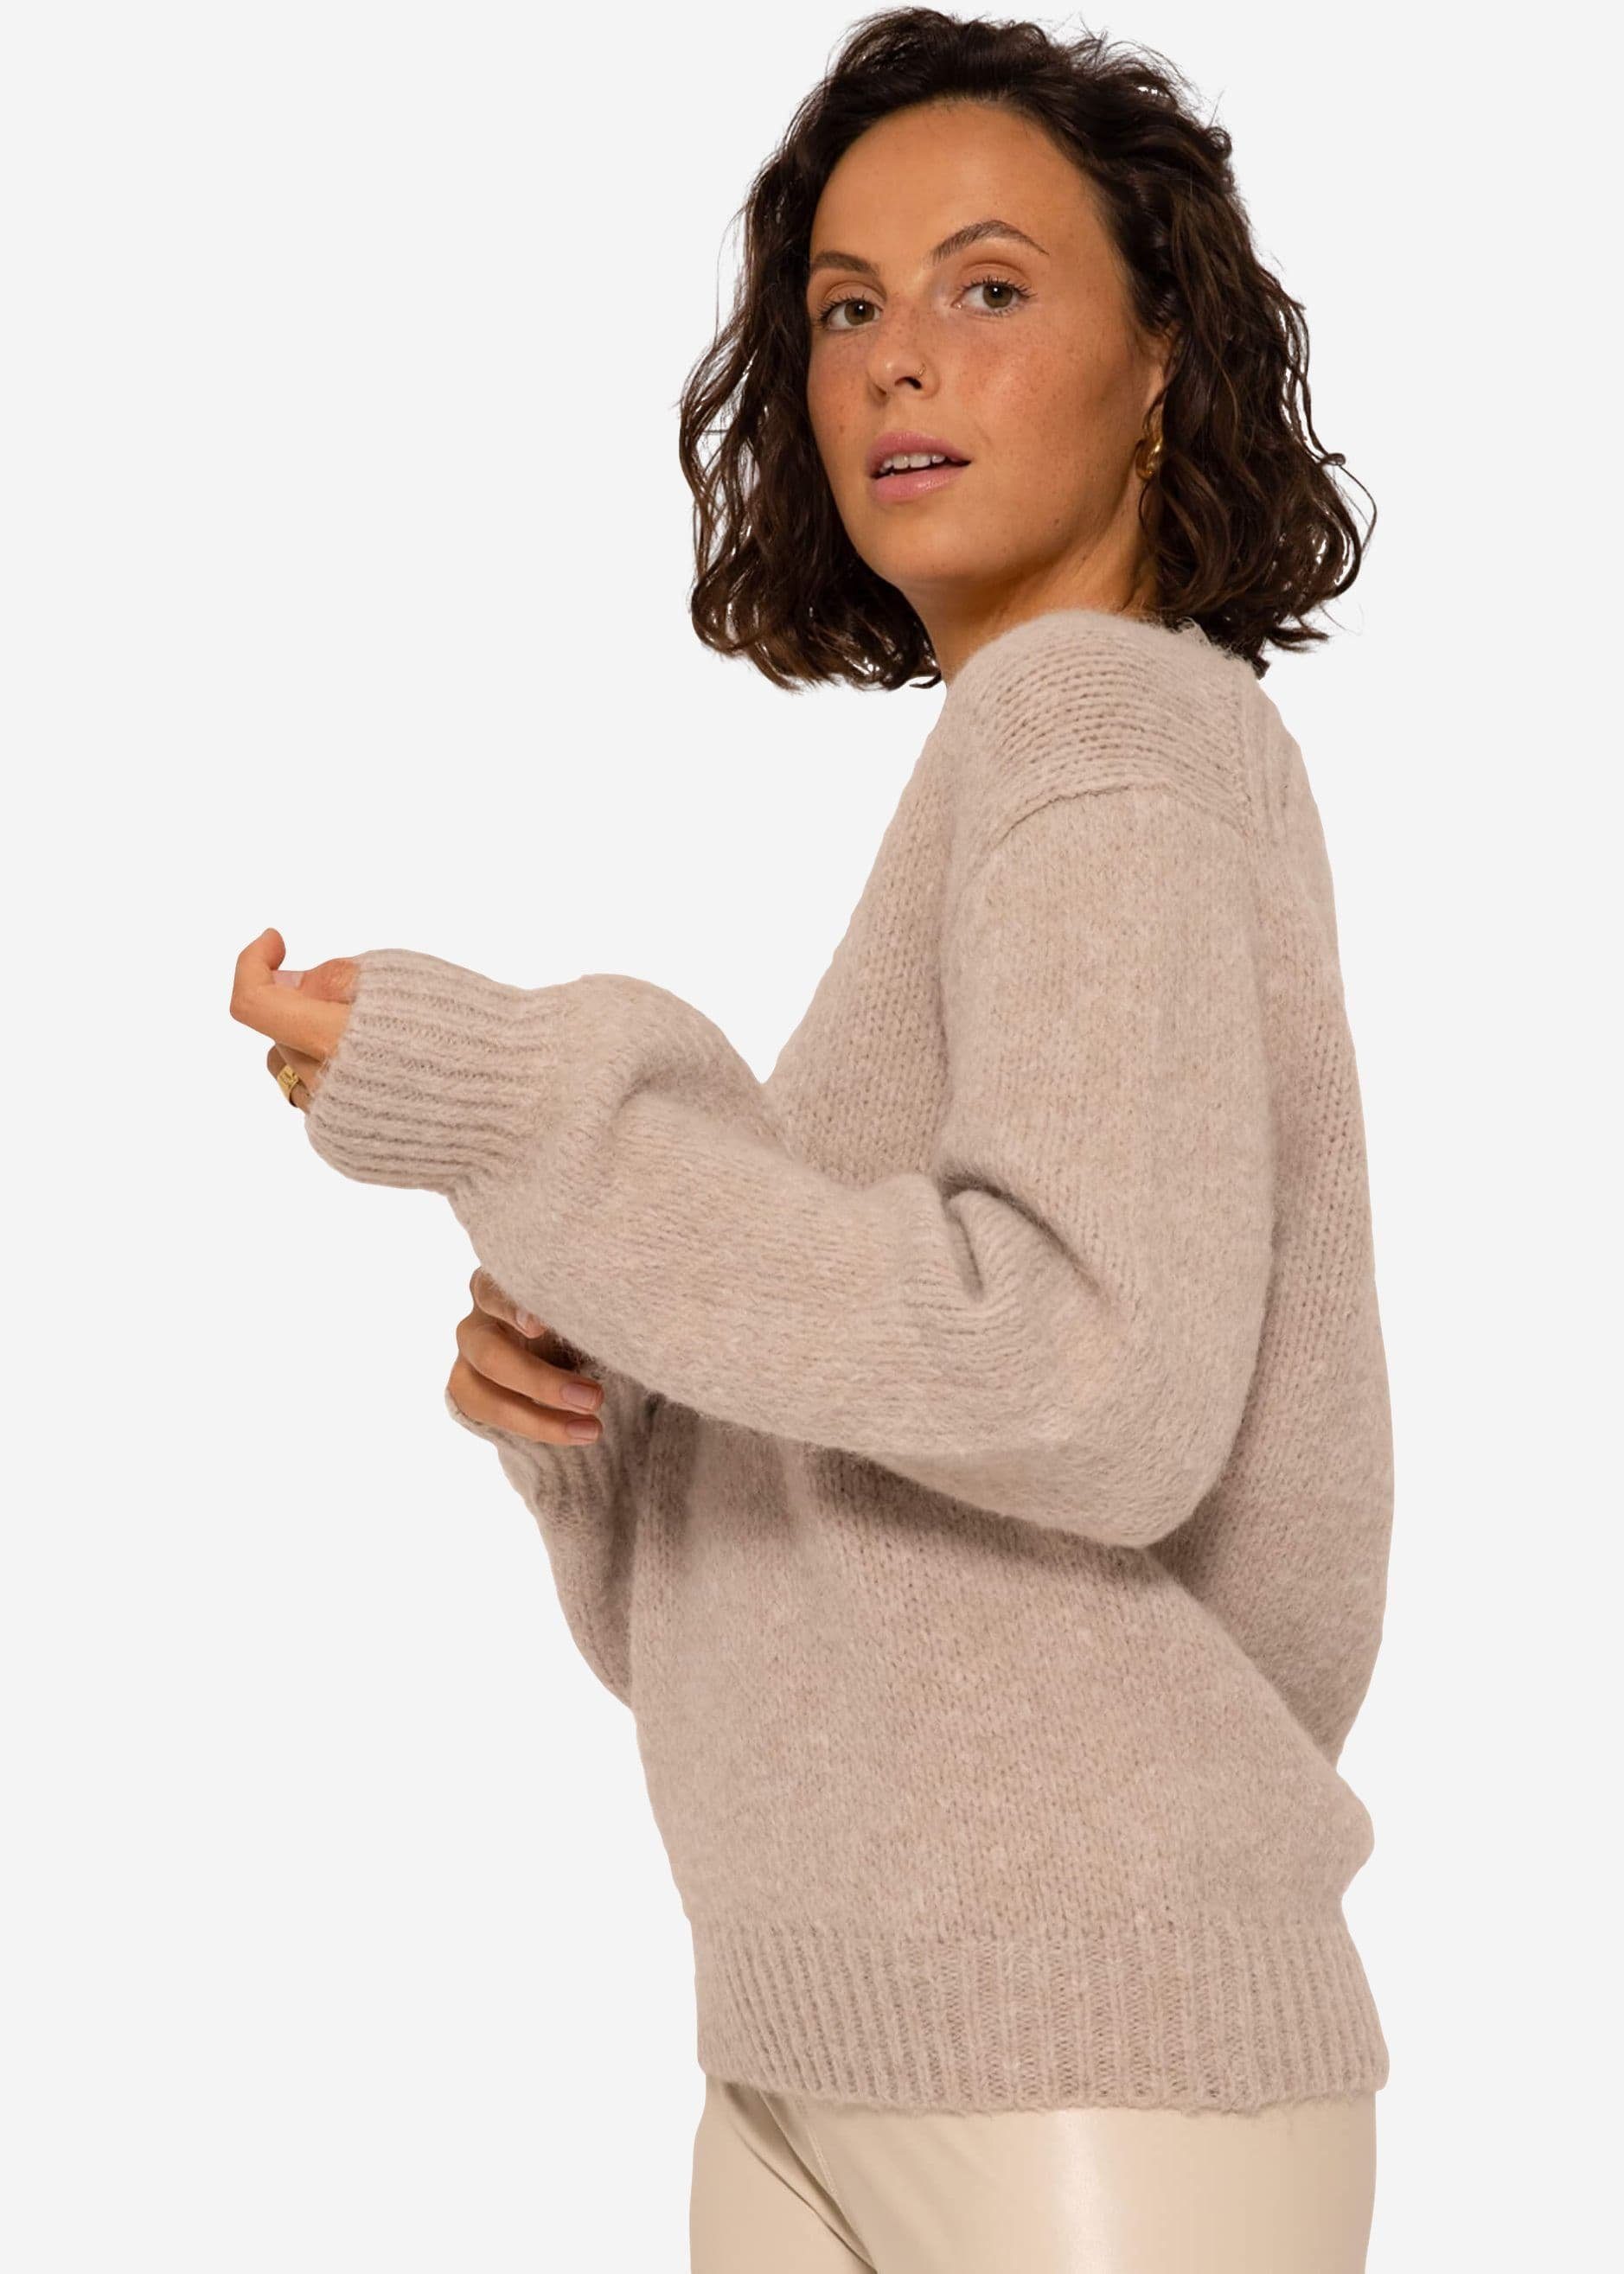 Strickpullover SASSYCLASSY Beige mit Strickpullover aus Spitzen-Ausschnitt Lässiger Oversize weichem Damen Pullover Grobstrick